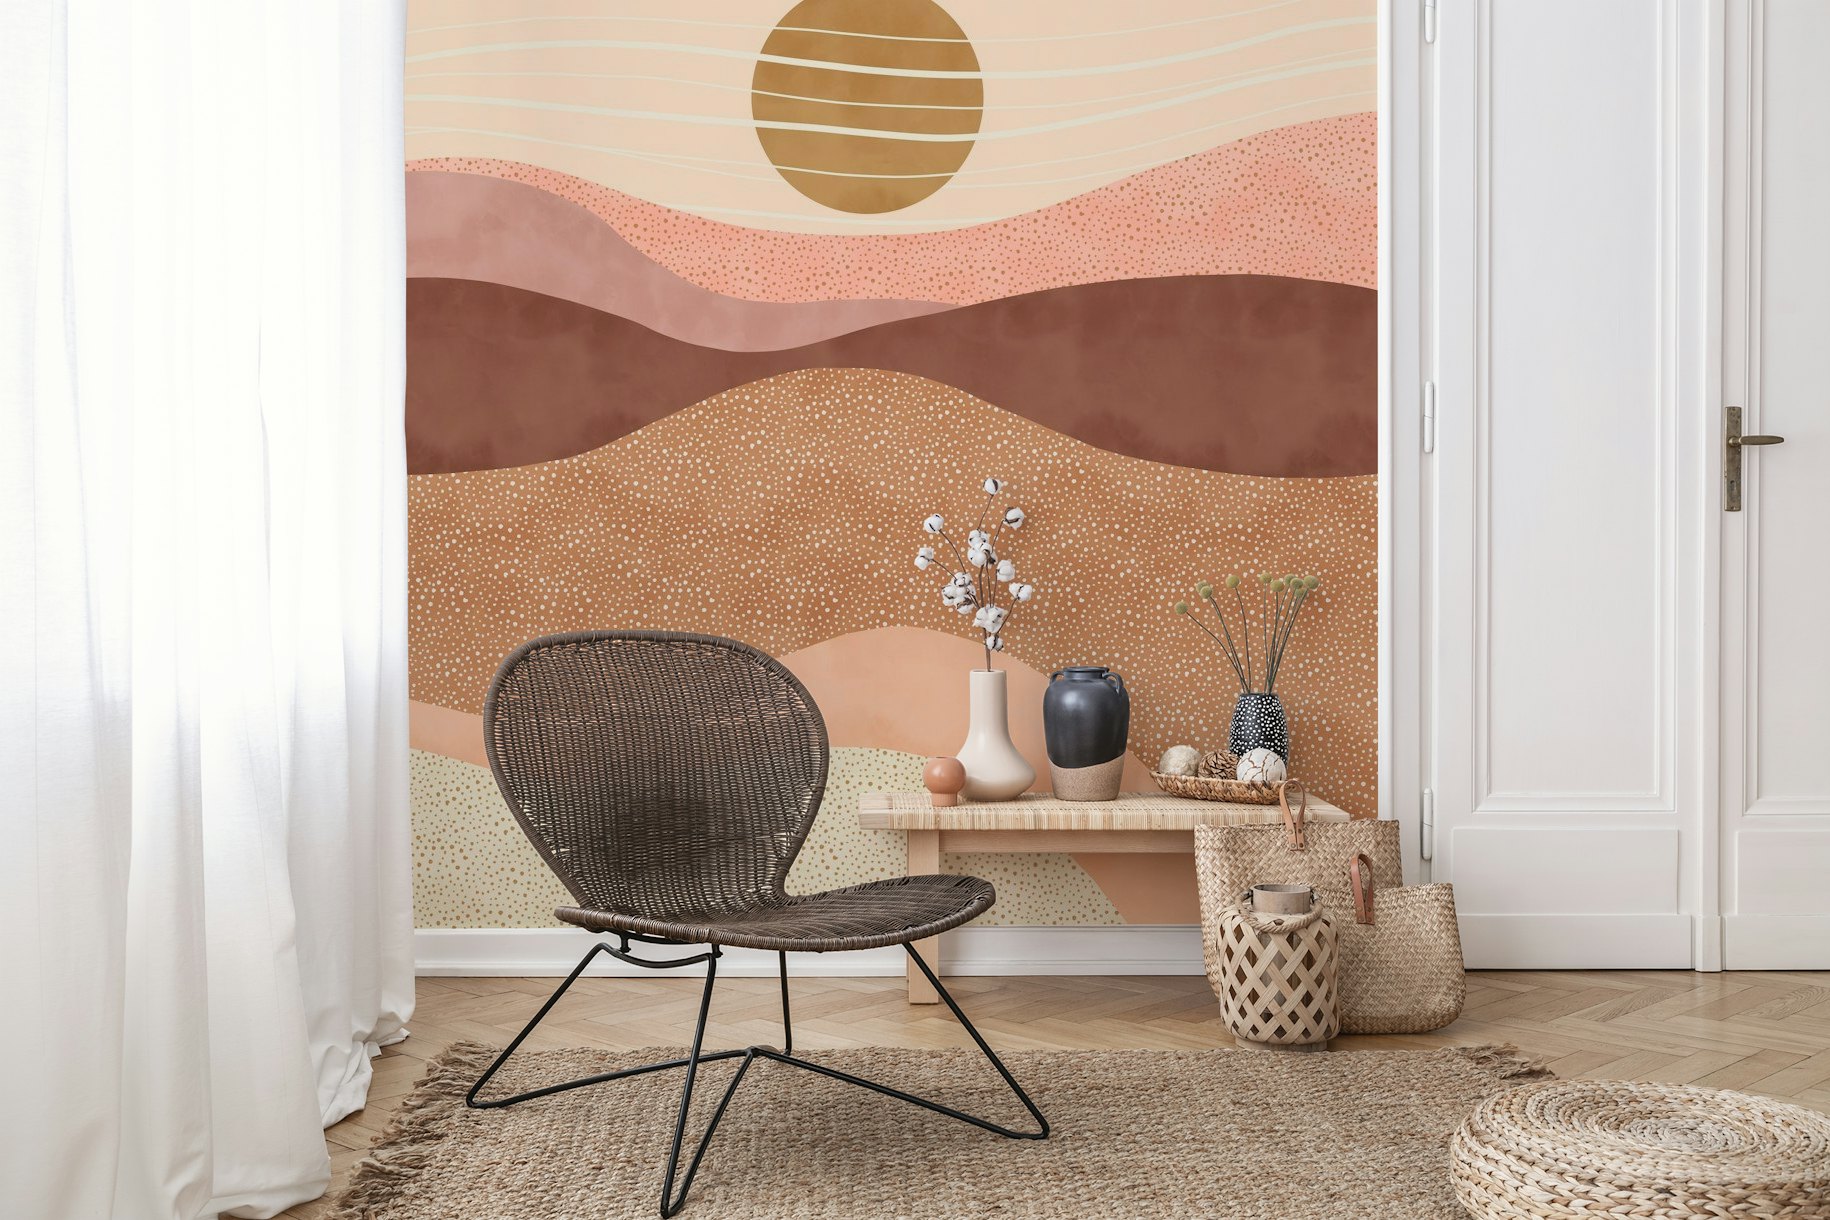 Sunset in the dunes III wallpaper